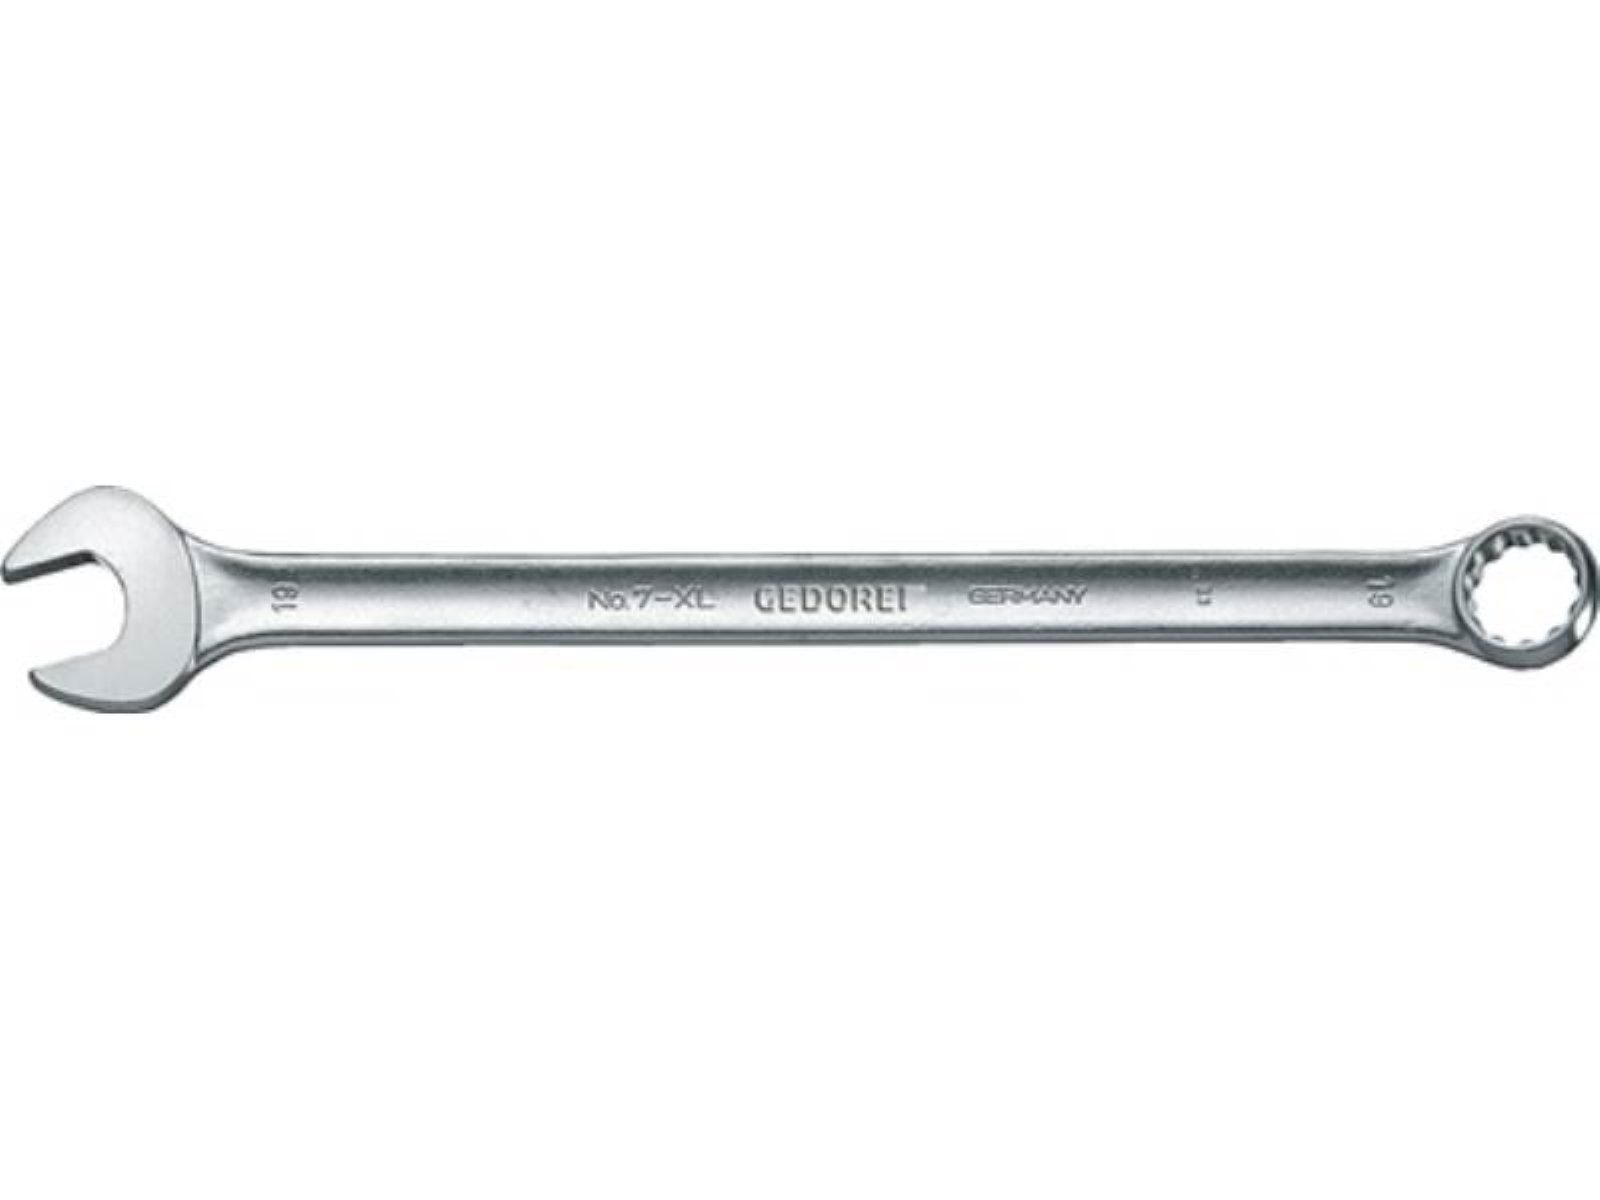 Gedore 7 Form ext.lang 11mm A L.200mm Maulschlüssel Ringmaulschlüssel CV-Stahl XL SW GEDOR